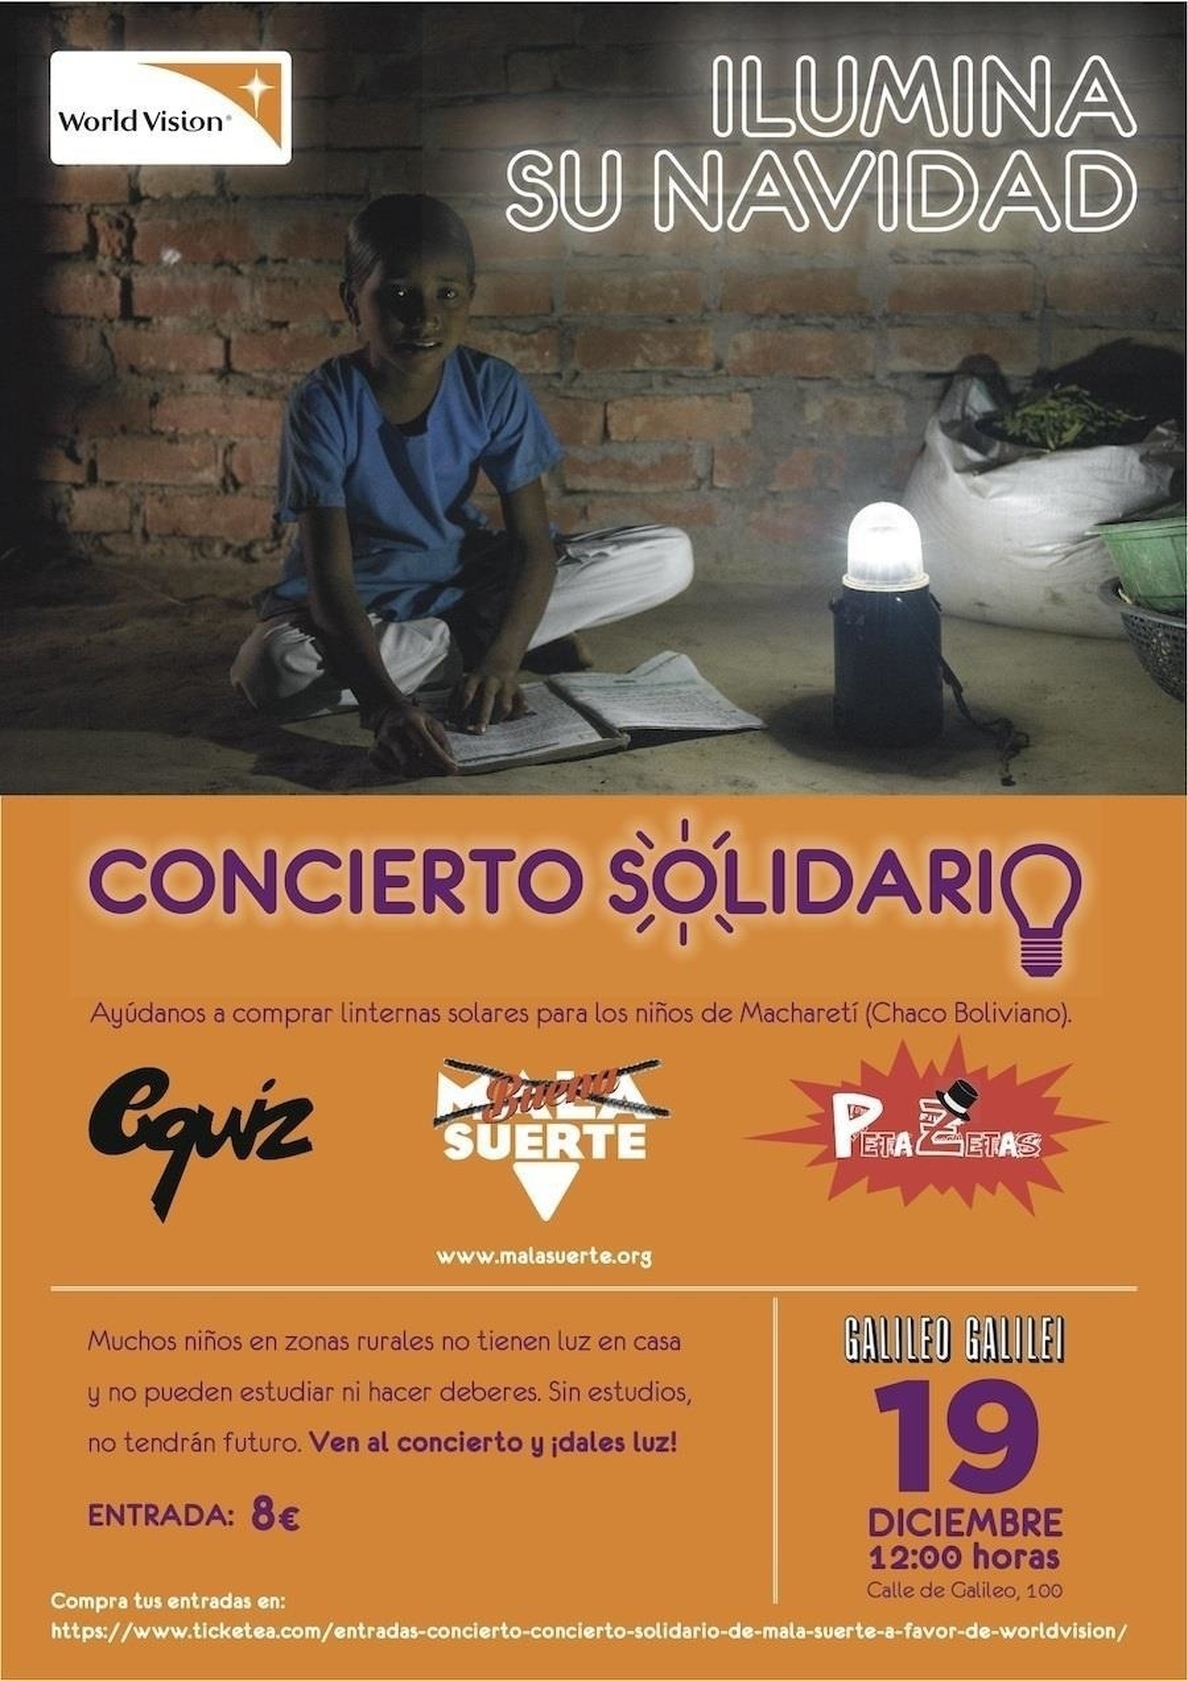 World Vision celebra un concierto solidario en Madrid para ayudar a niños de Bolivia